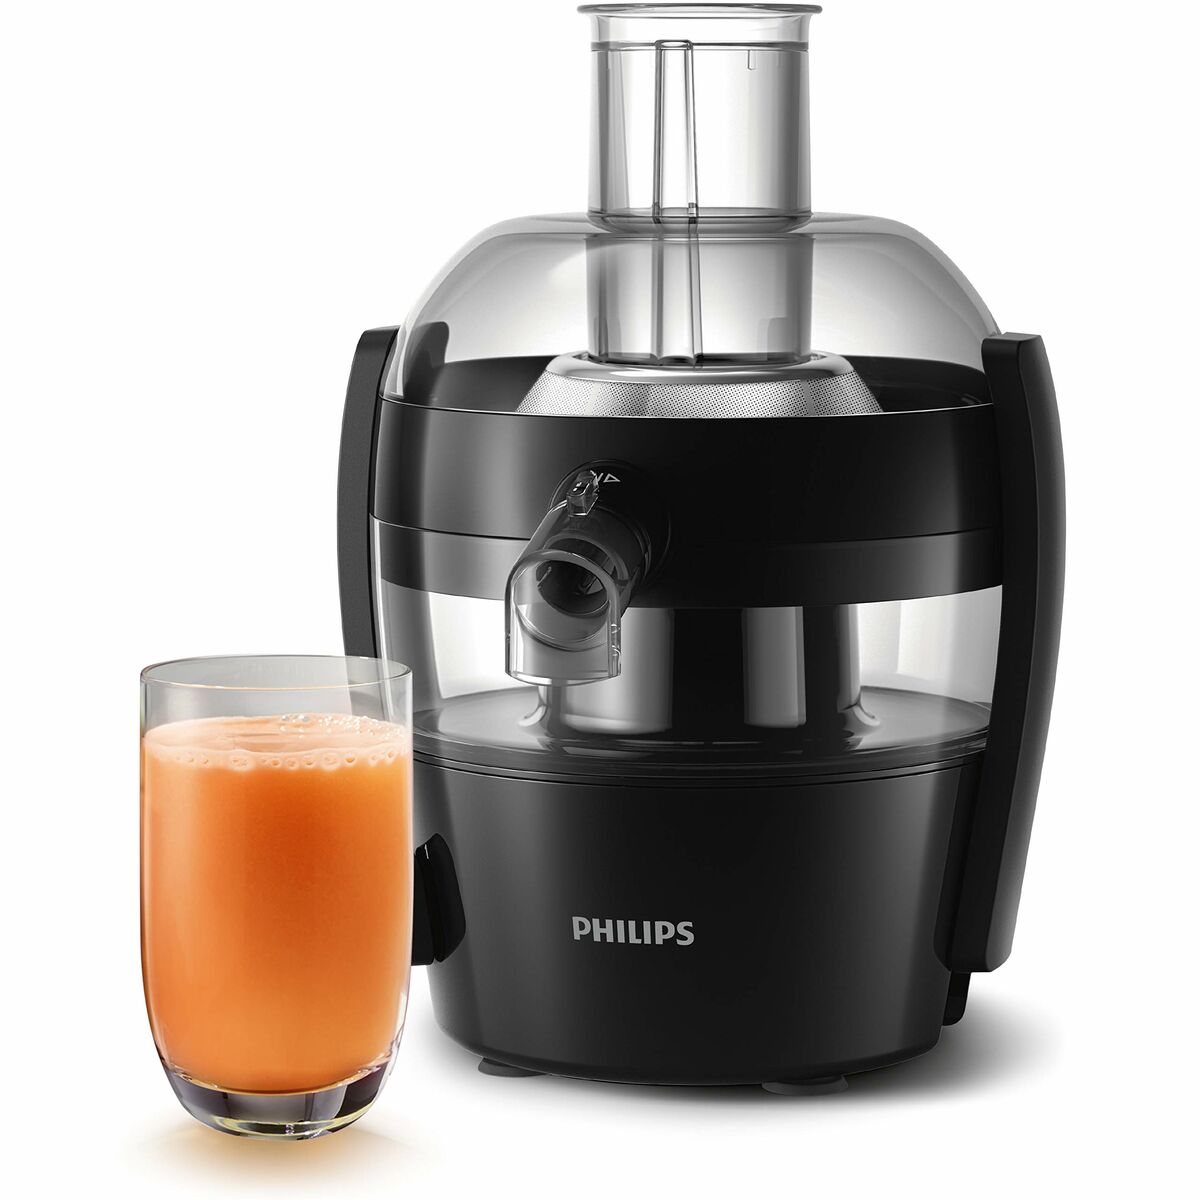 Liquidiseur Philips HR1832 / 00 noir 500 W 400 W 1,5 L